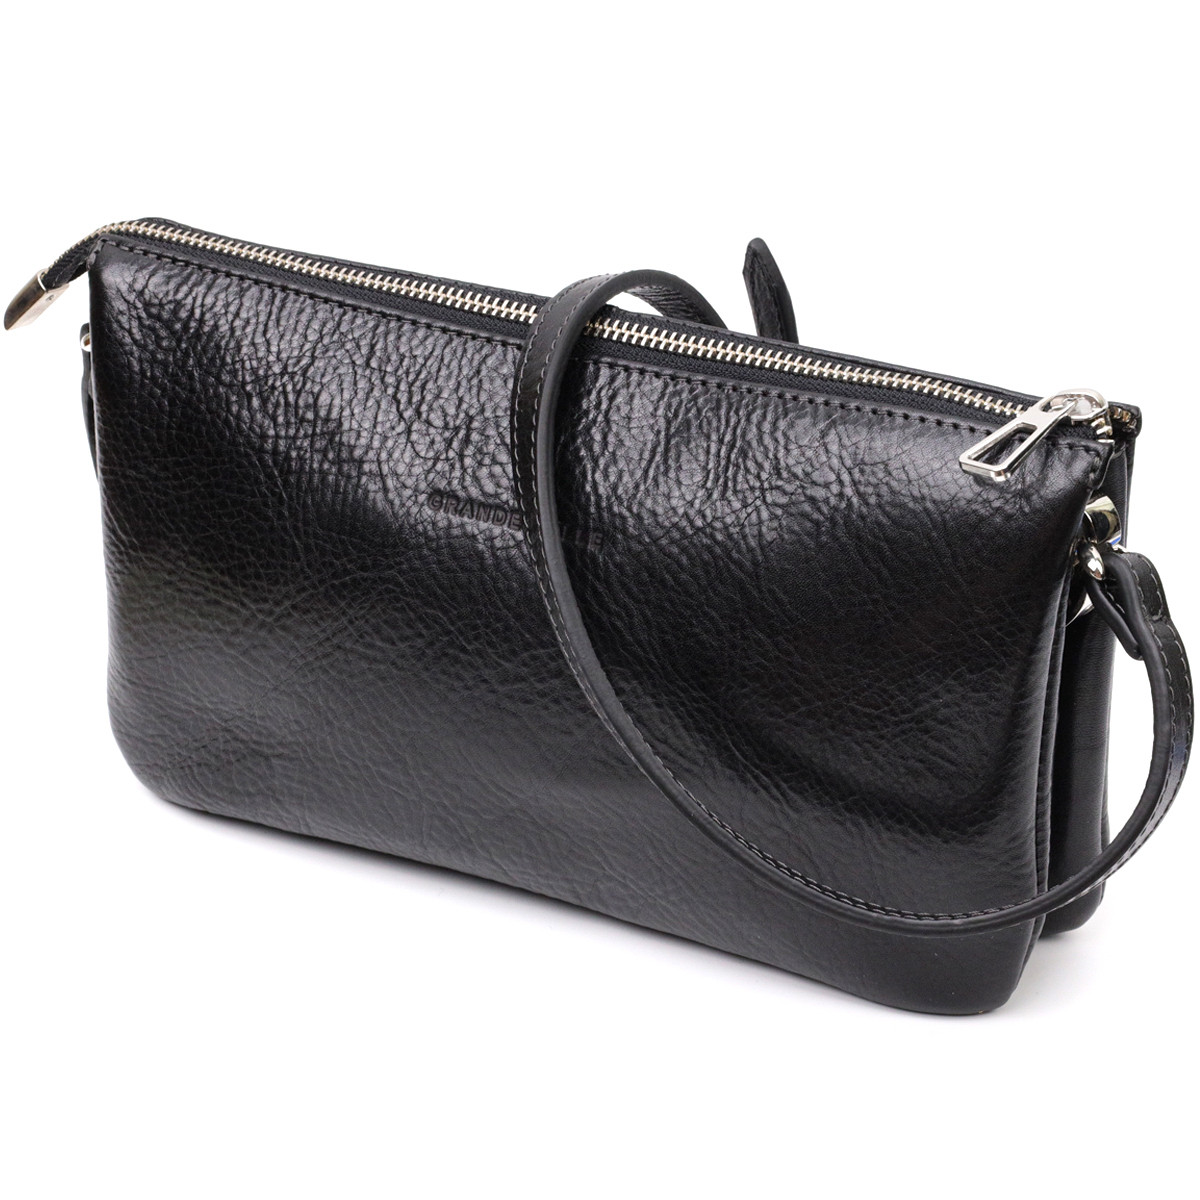 Жіноча сумка-клатч середнього розміру GRANDE PELLE 11658 Чорна. Натуральна шкіра